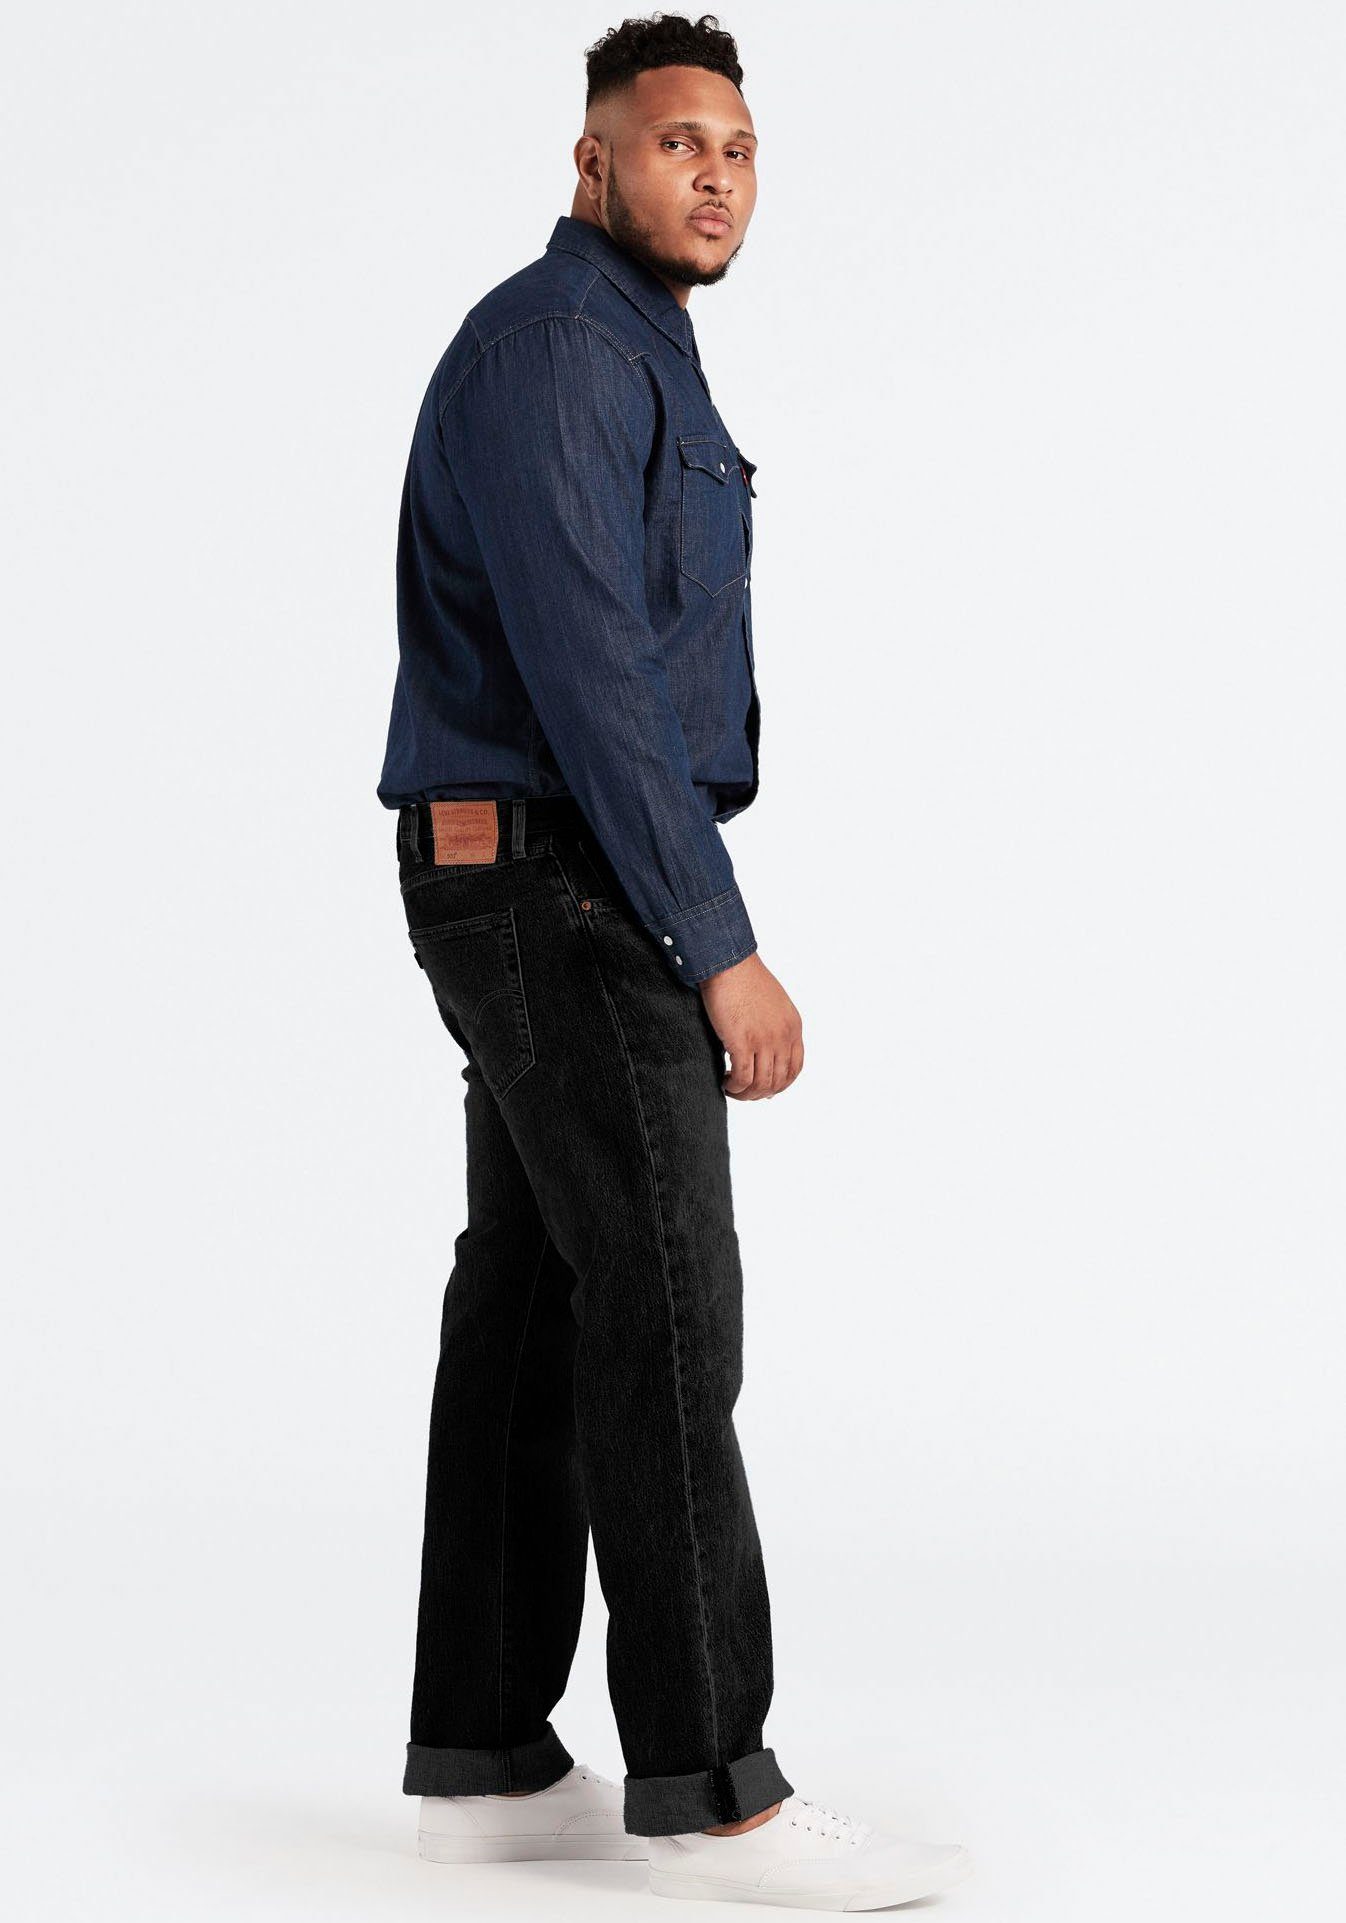 TAPER 502 einen Plus black für denim B&T lässigen Levi's® Look Tapered-fit-Jeans